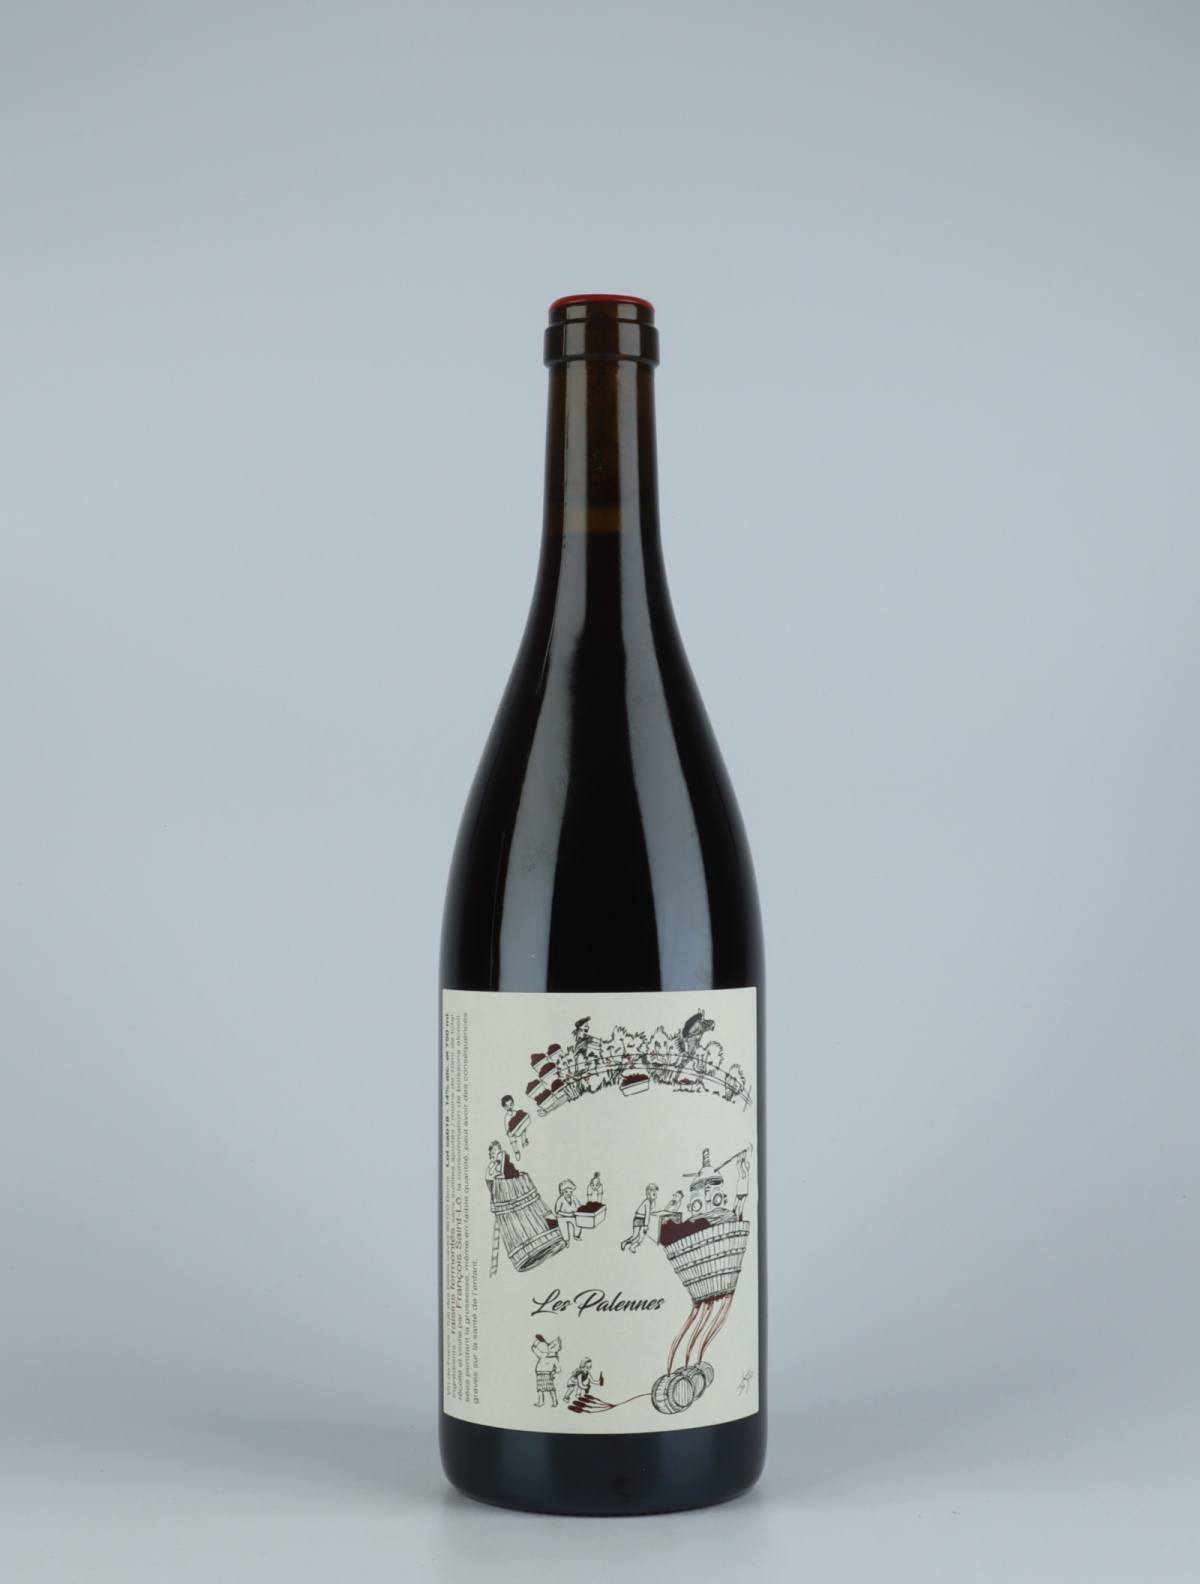 A bottle 2018 Les Palennes Red wine from François Saint-Lô, Loire in France